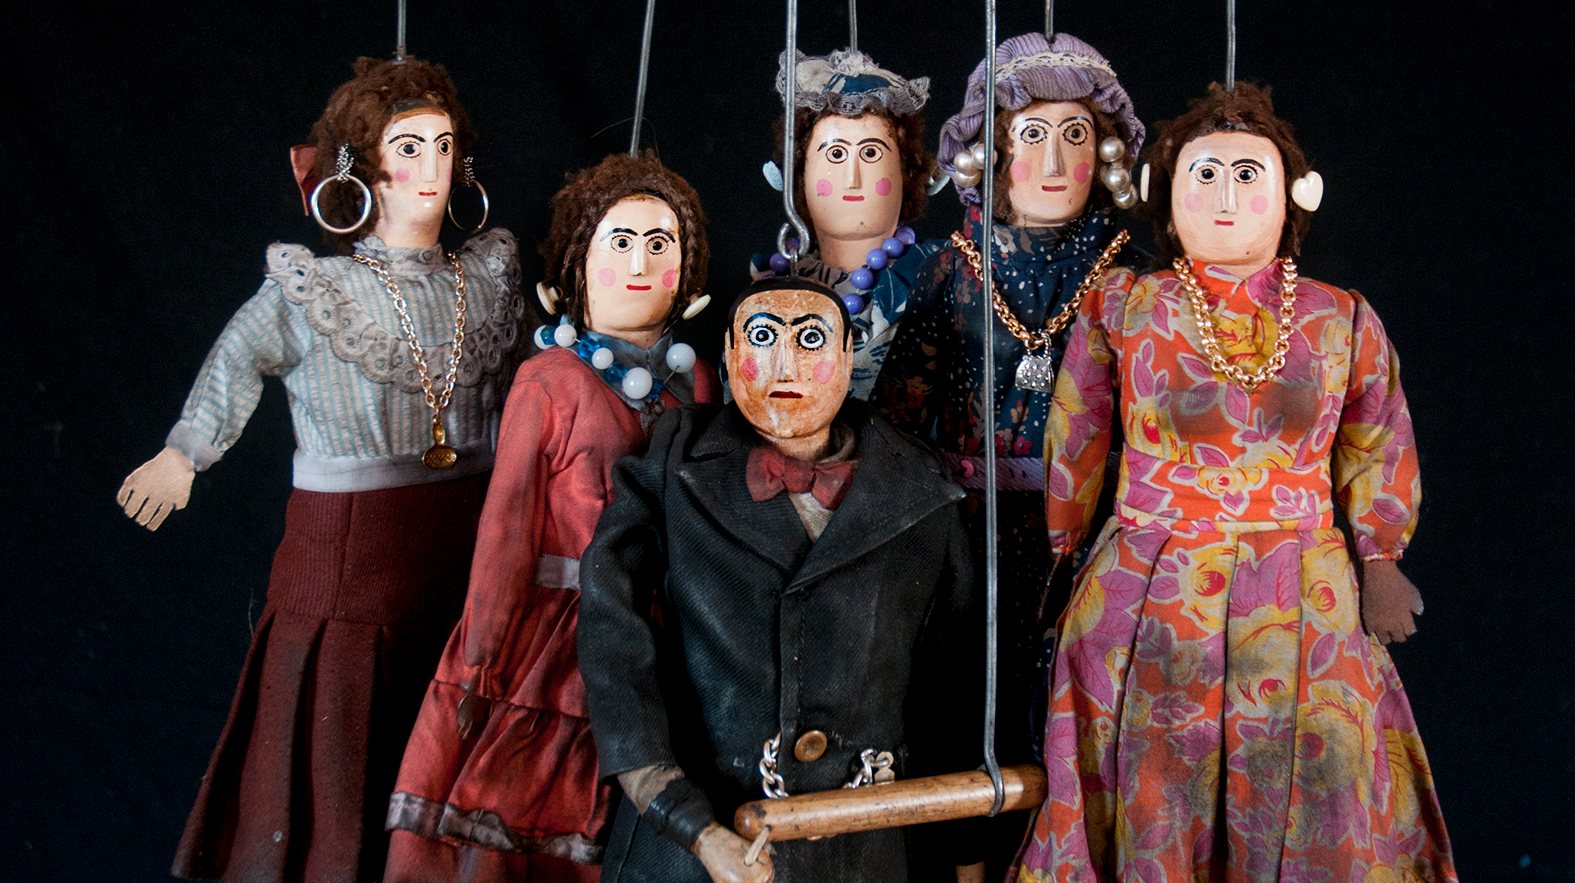 A 6.ª edição do Festival Internacional de Marionetas do Porto vai ocupar vários palcos da cidade com 21 espetáculos, a partir desta sexta-feira